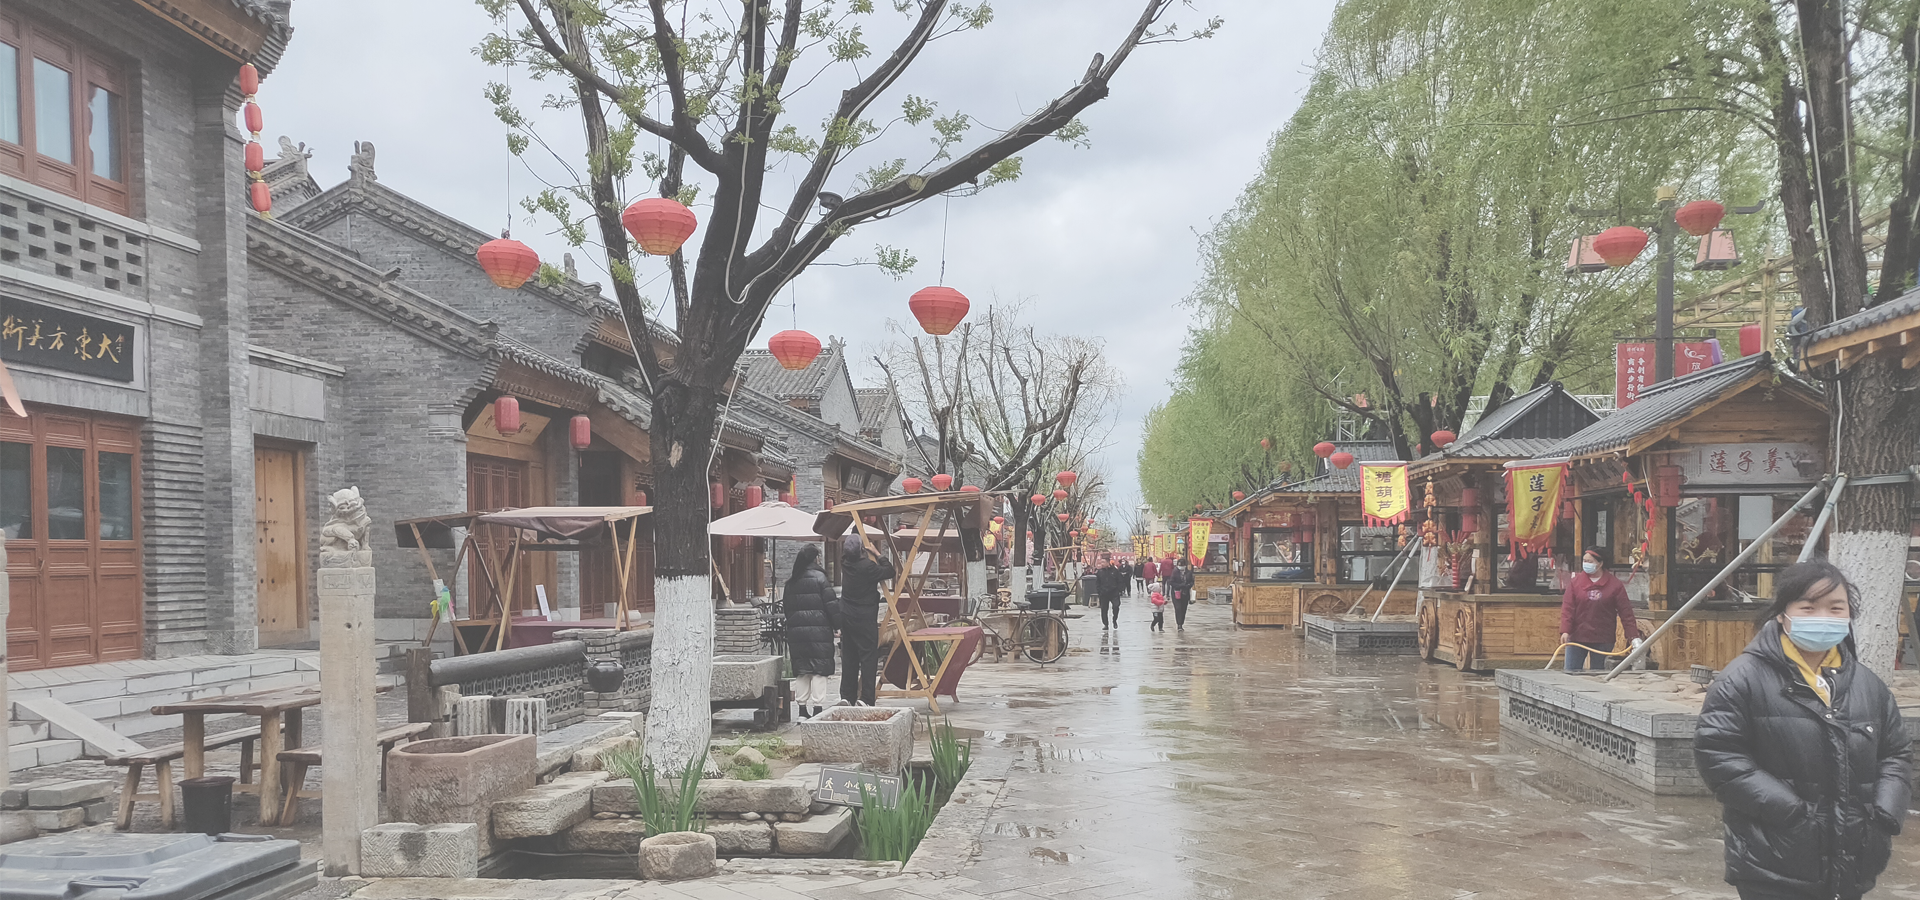 <b>Linyi, Shandong Province, China</b>